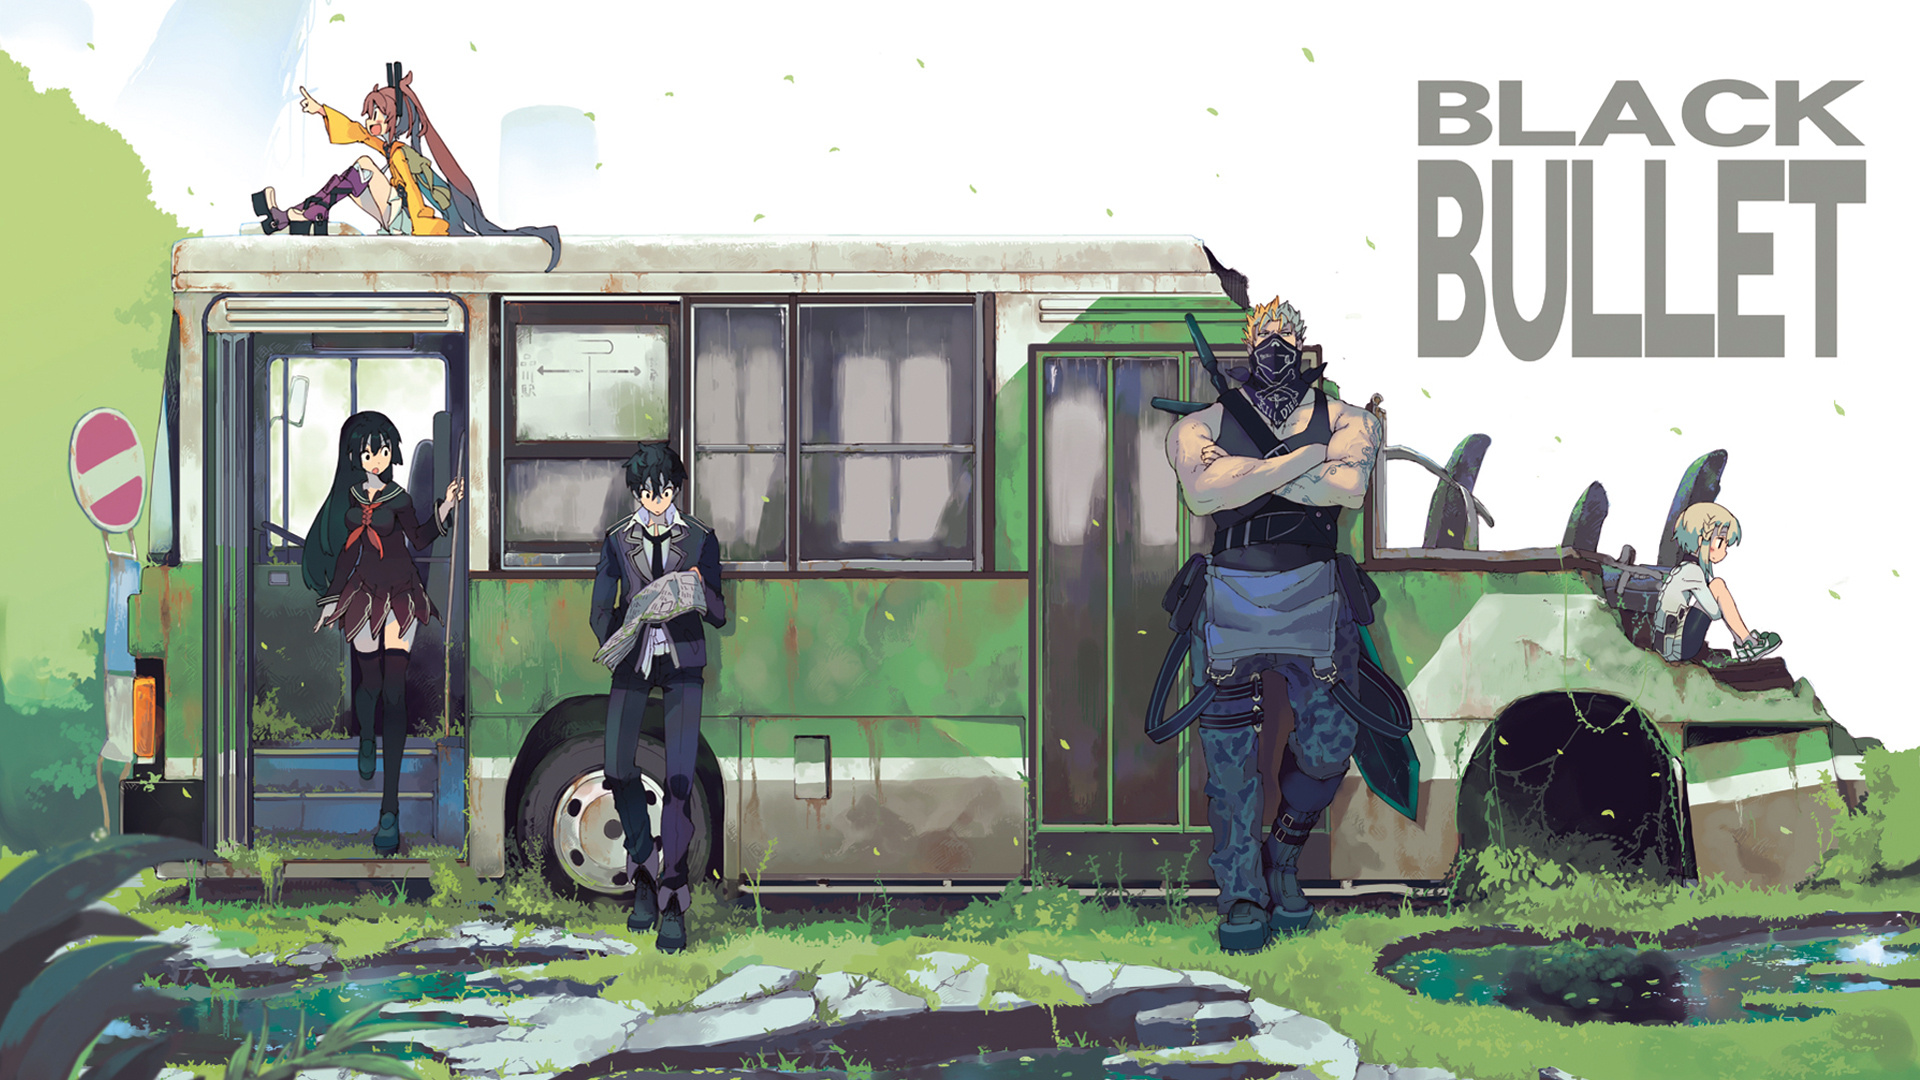 Black Bullet (Anime): Poster, Announced at Dengeki Bunko's Autumn Festival 2013. 1920x1080 Full HD Wallpaper.